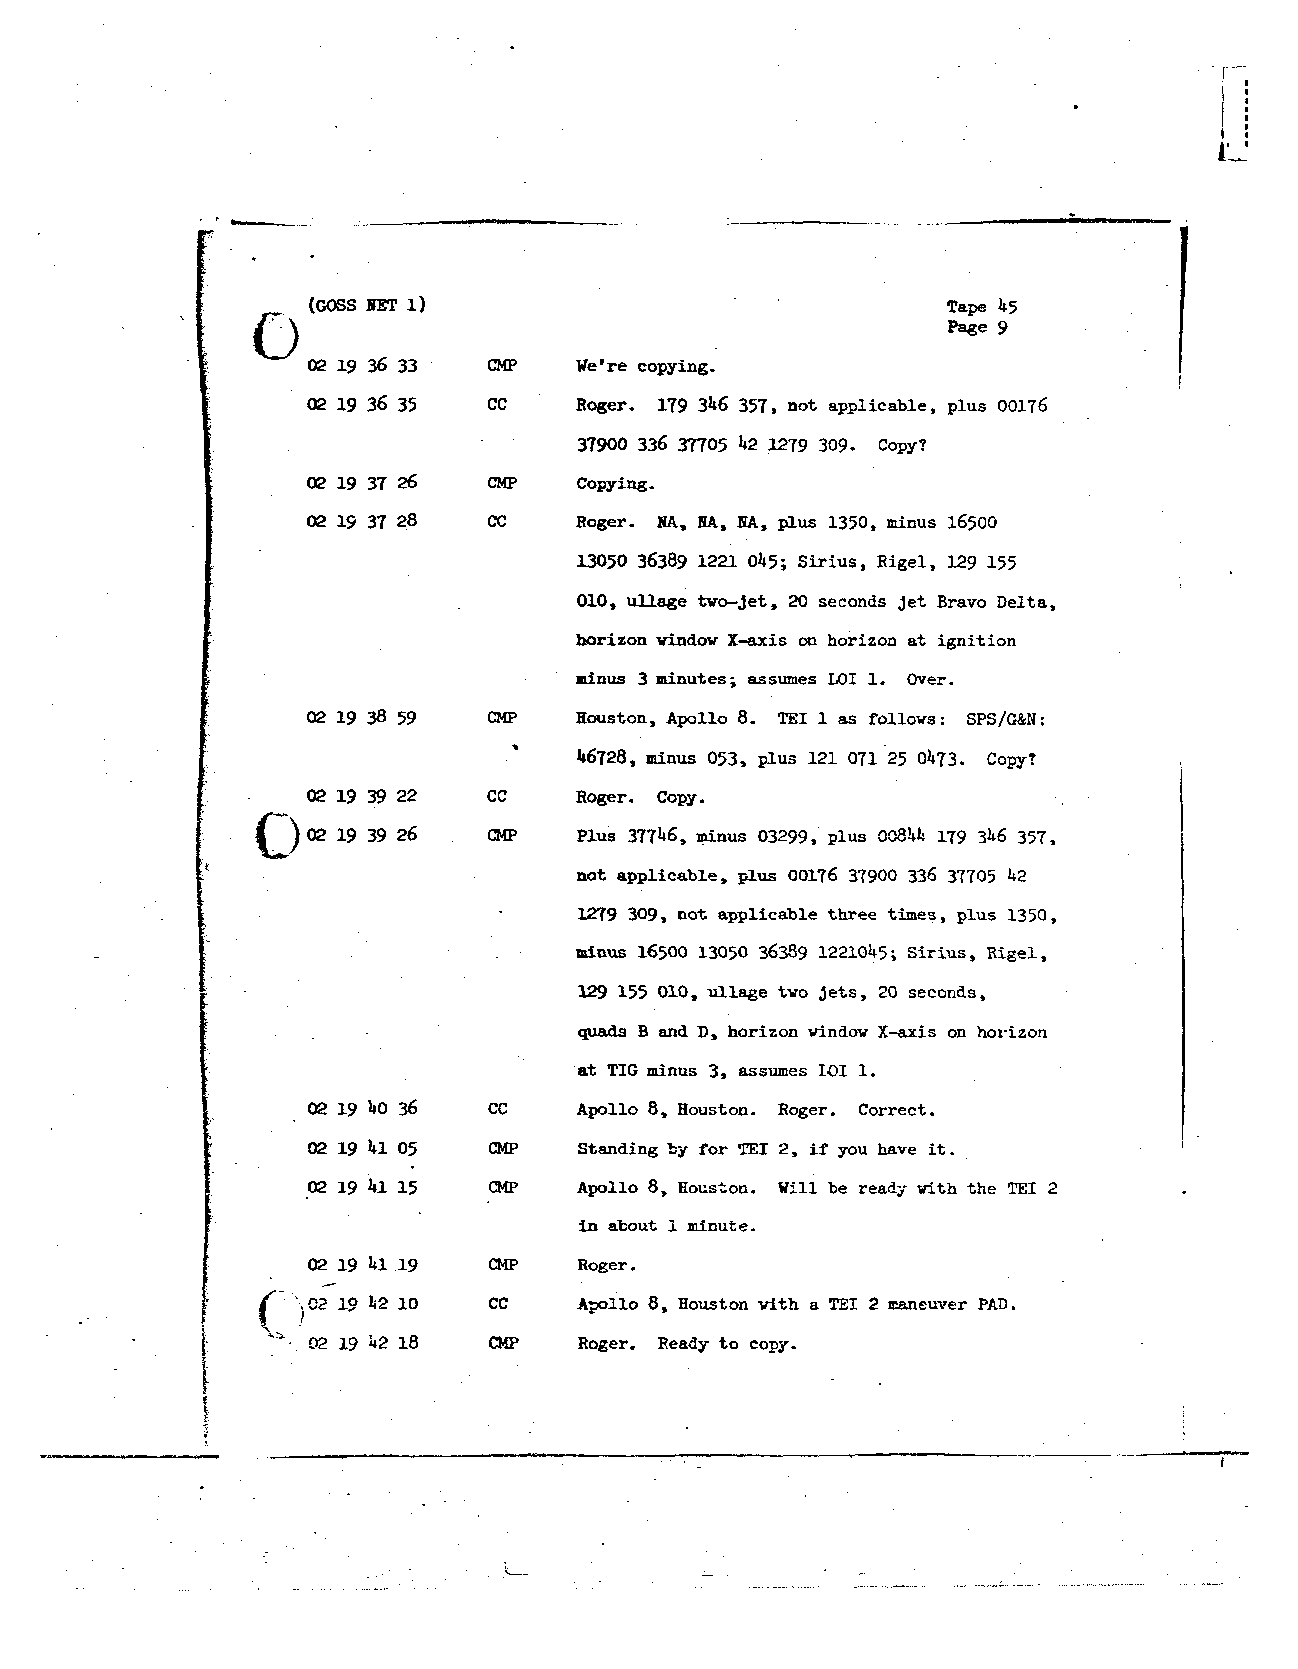 Page 348 of Apollo 8’s original transcript